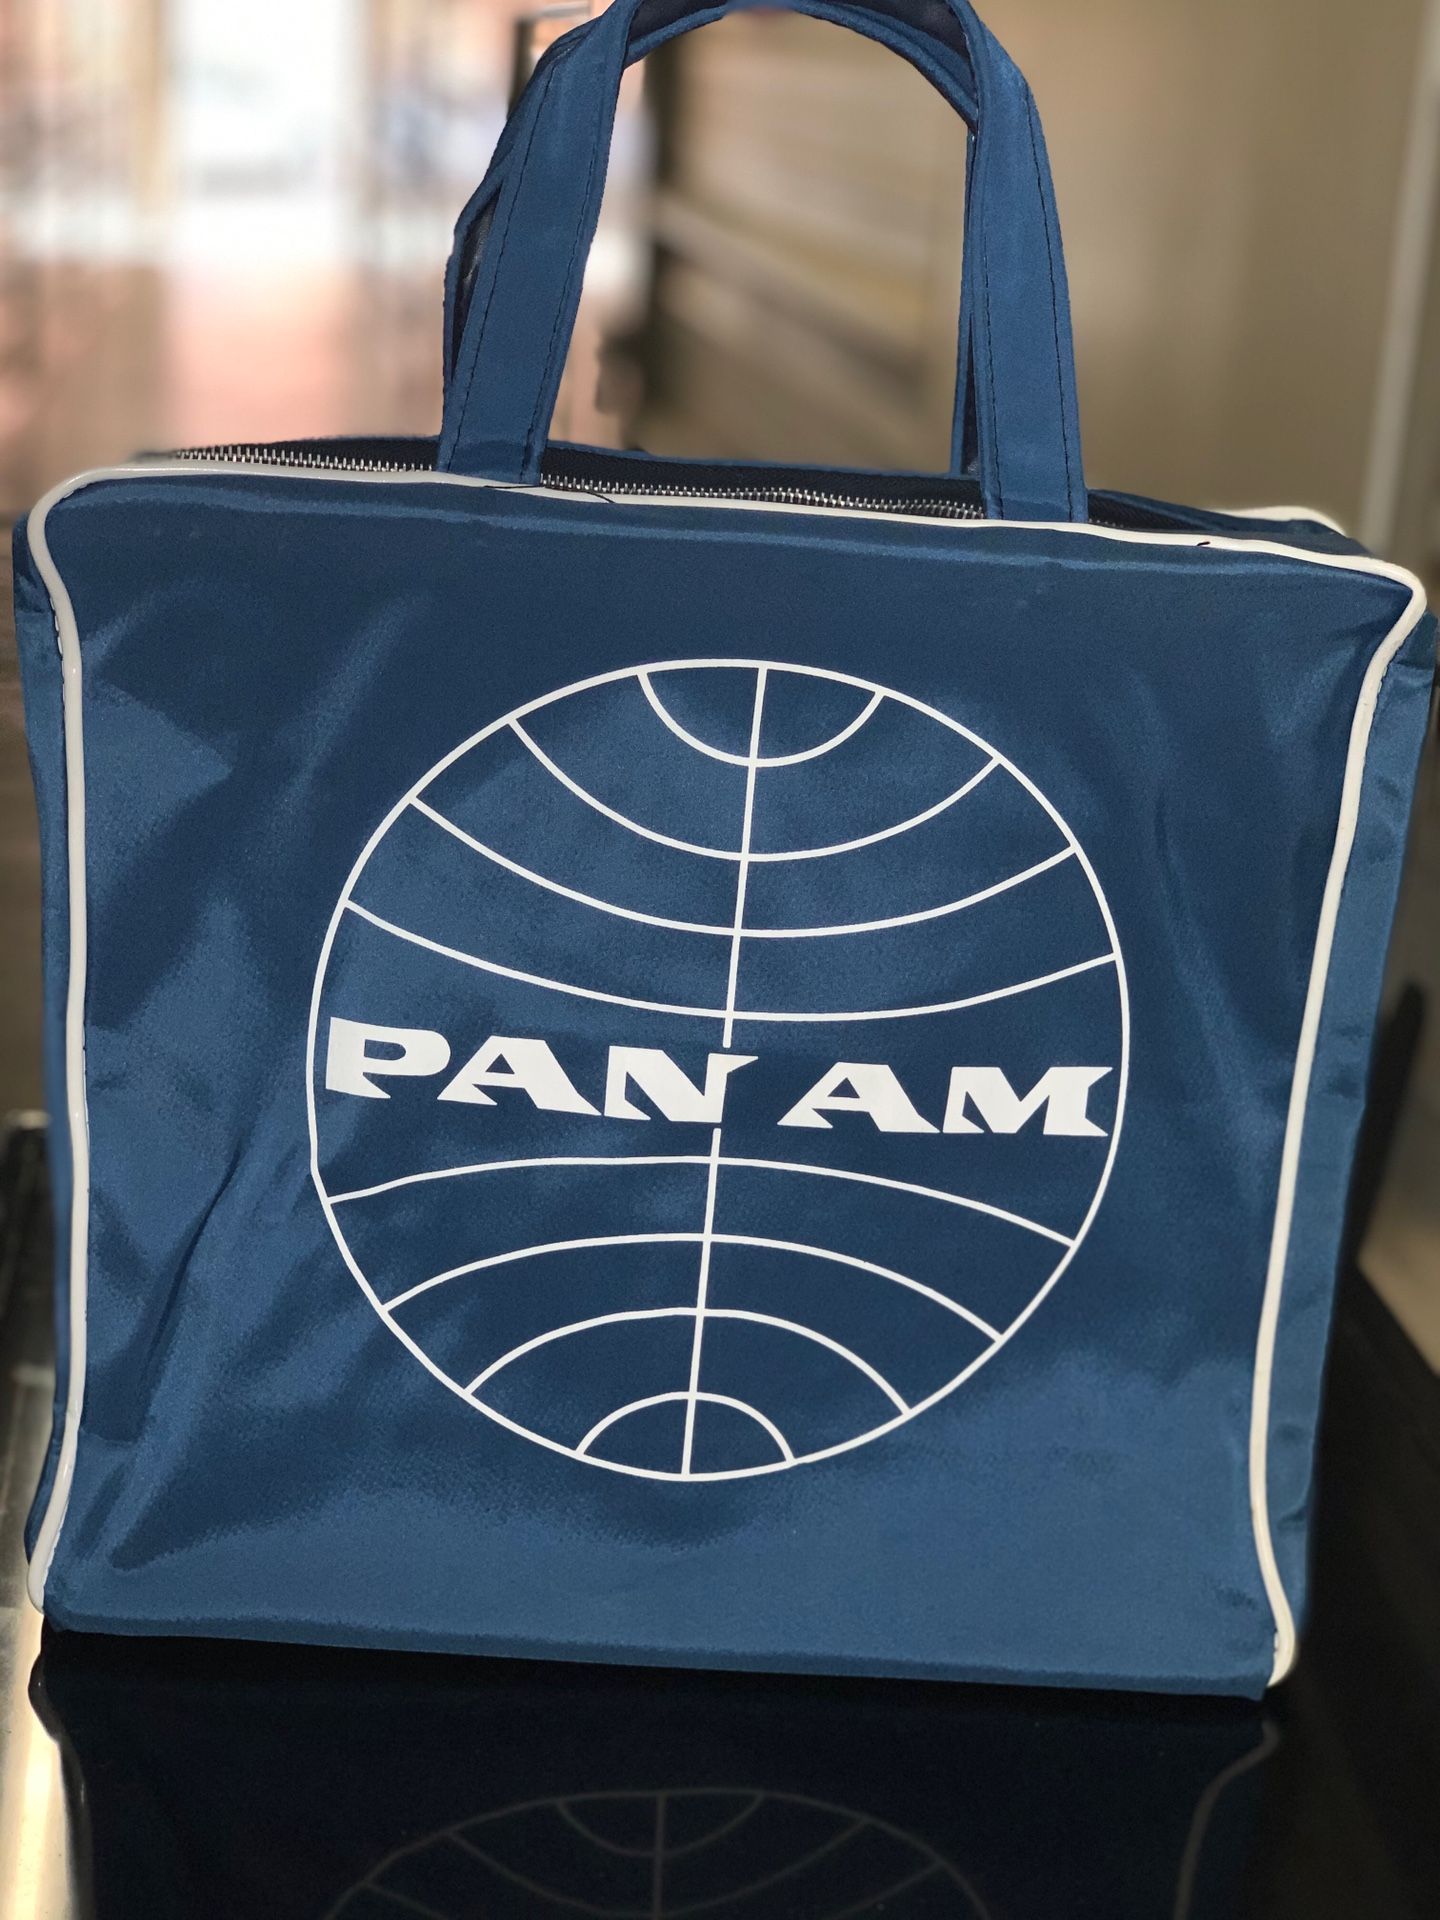 ORIGINAL - Travel/TOTE Bag "PAN AM"